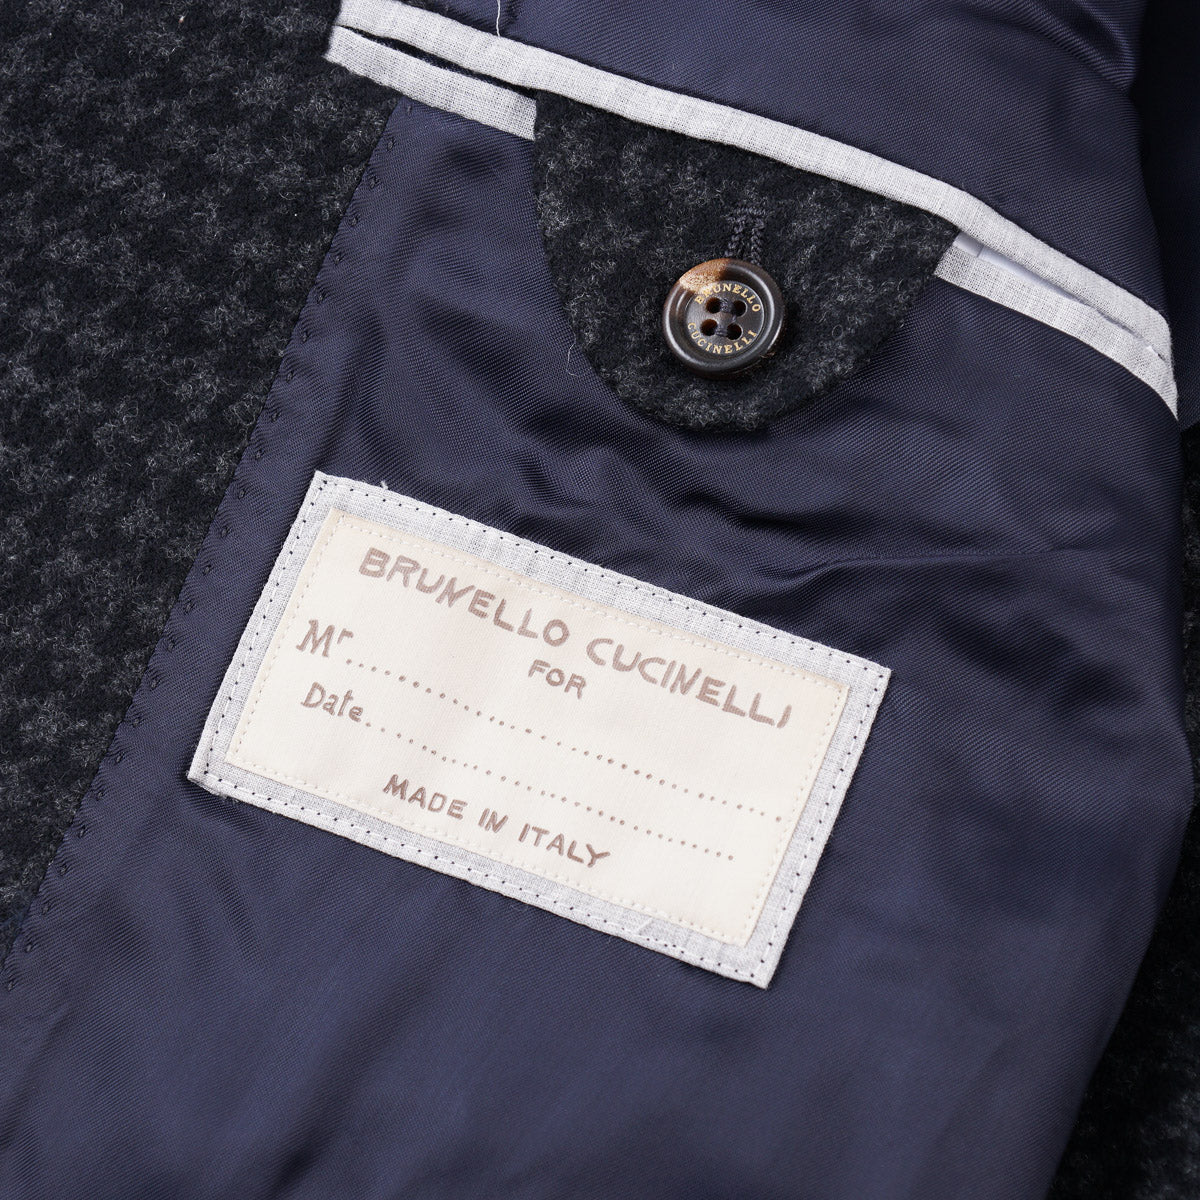 Brunello Cucinelli Houndstooth Wool Overcoat - Top Shelf Apparel